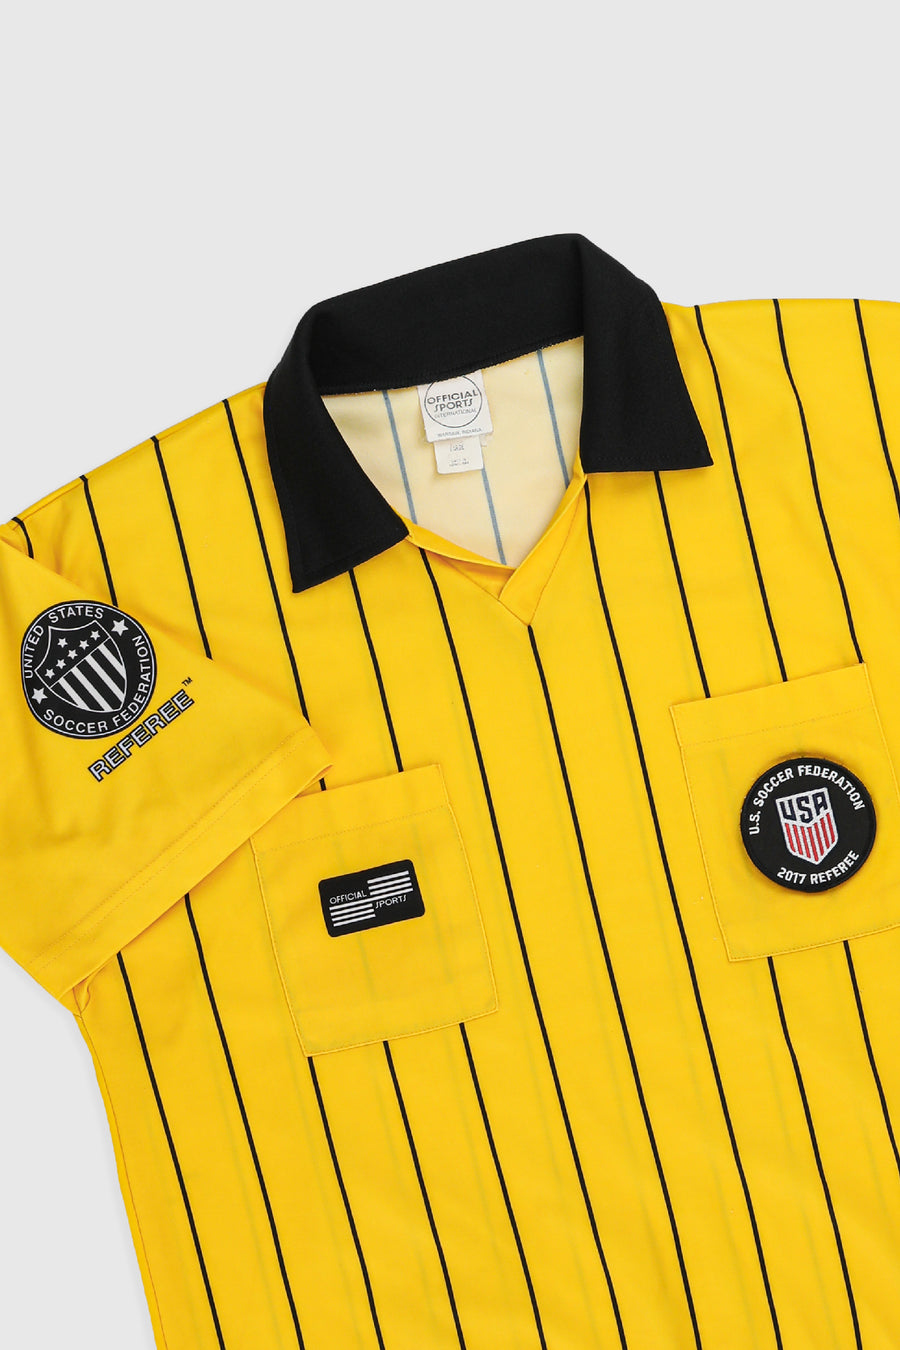 U.S Referee Soccer Jersey